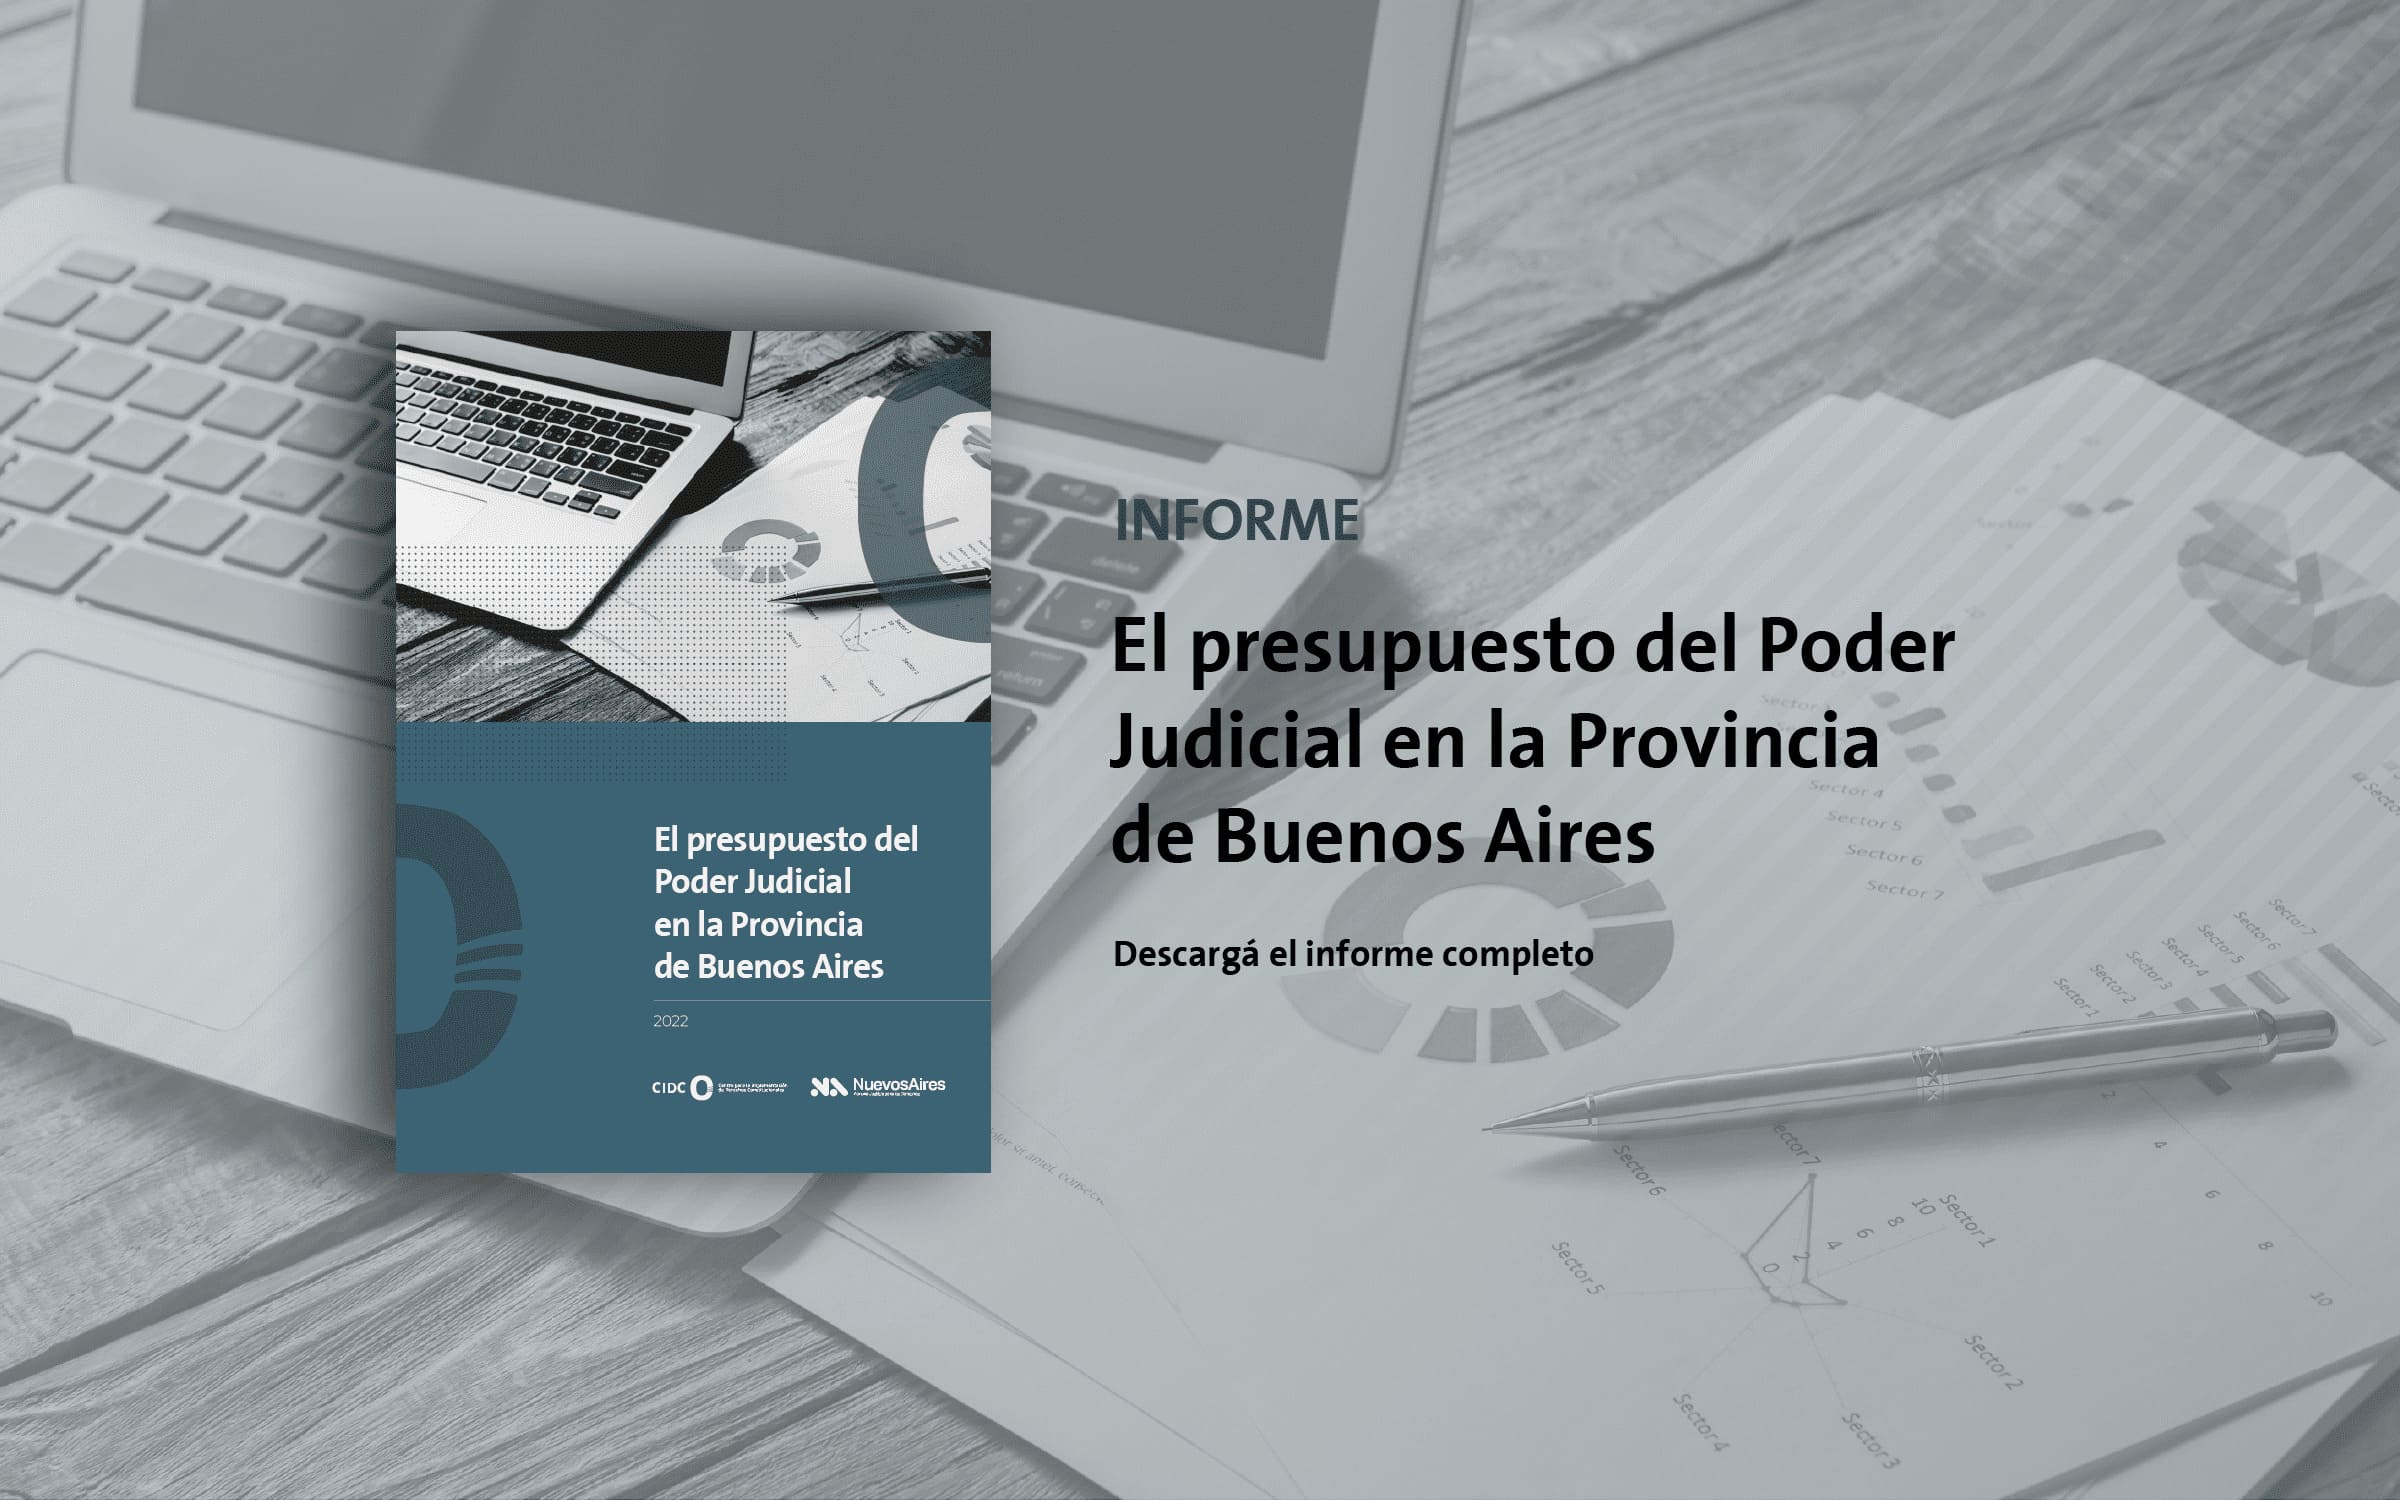 El presupuesto del Poder Judicial en la Provincia de Buenos Aires